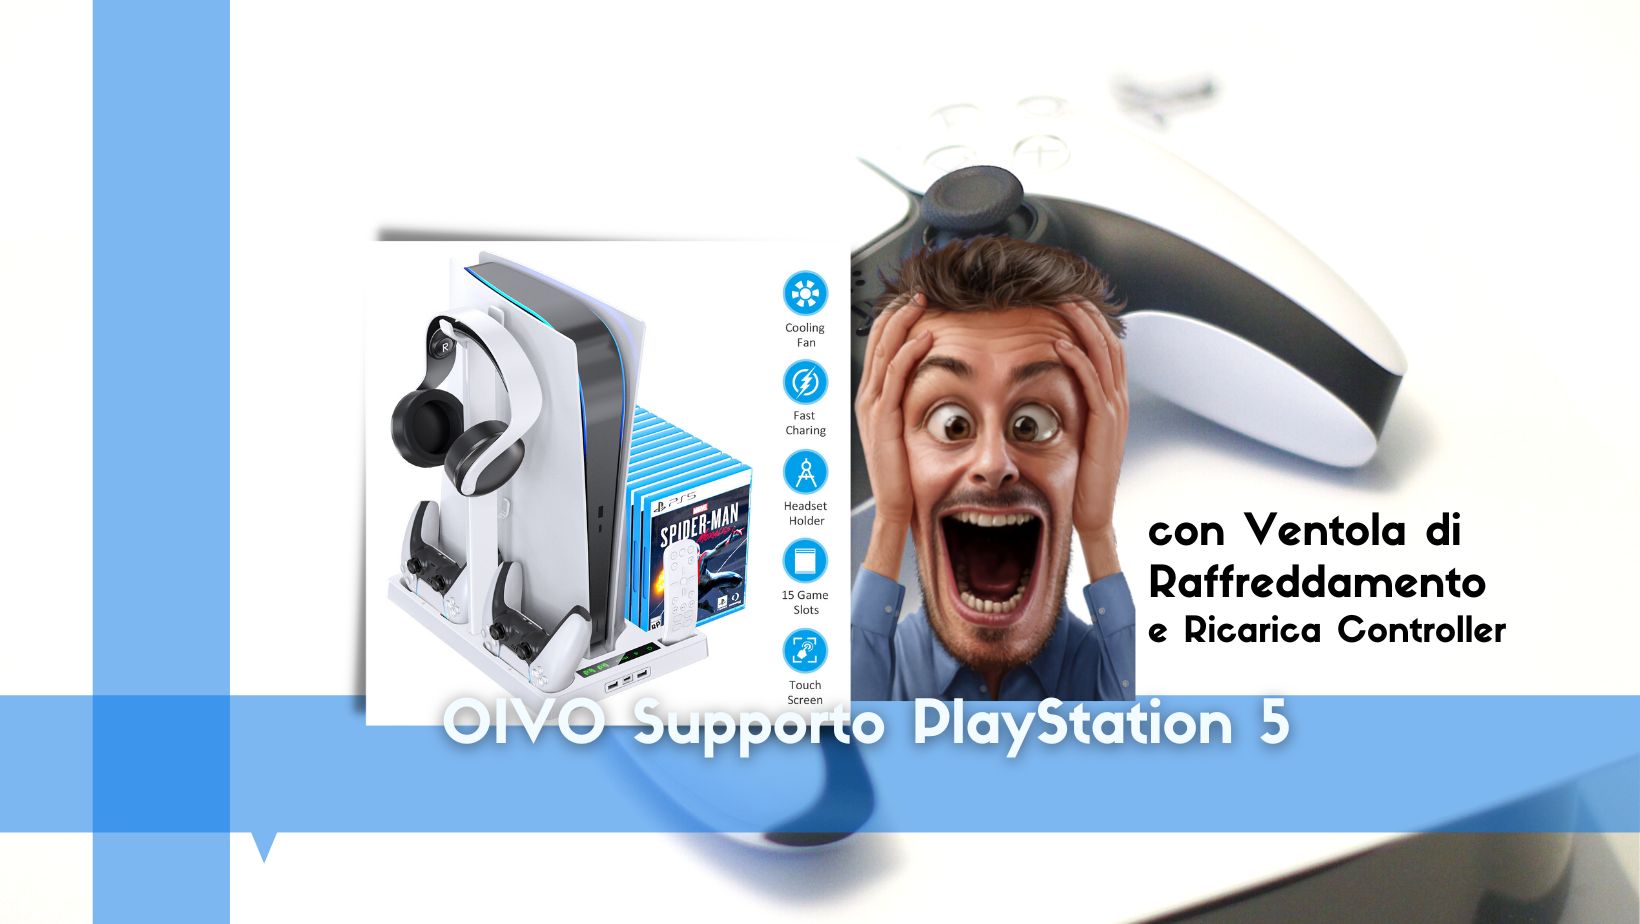 Supporto multifunzione PlayStation 5, con ventola raffreddamento e ricarica  controller - Webnews